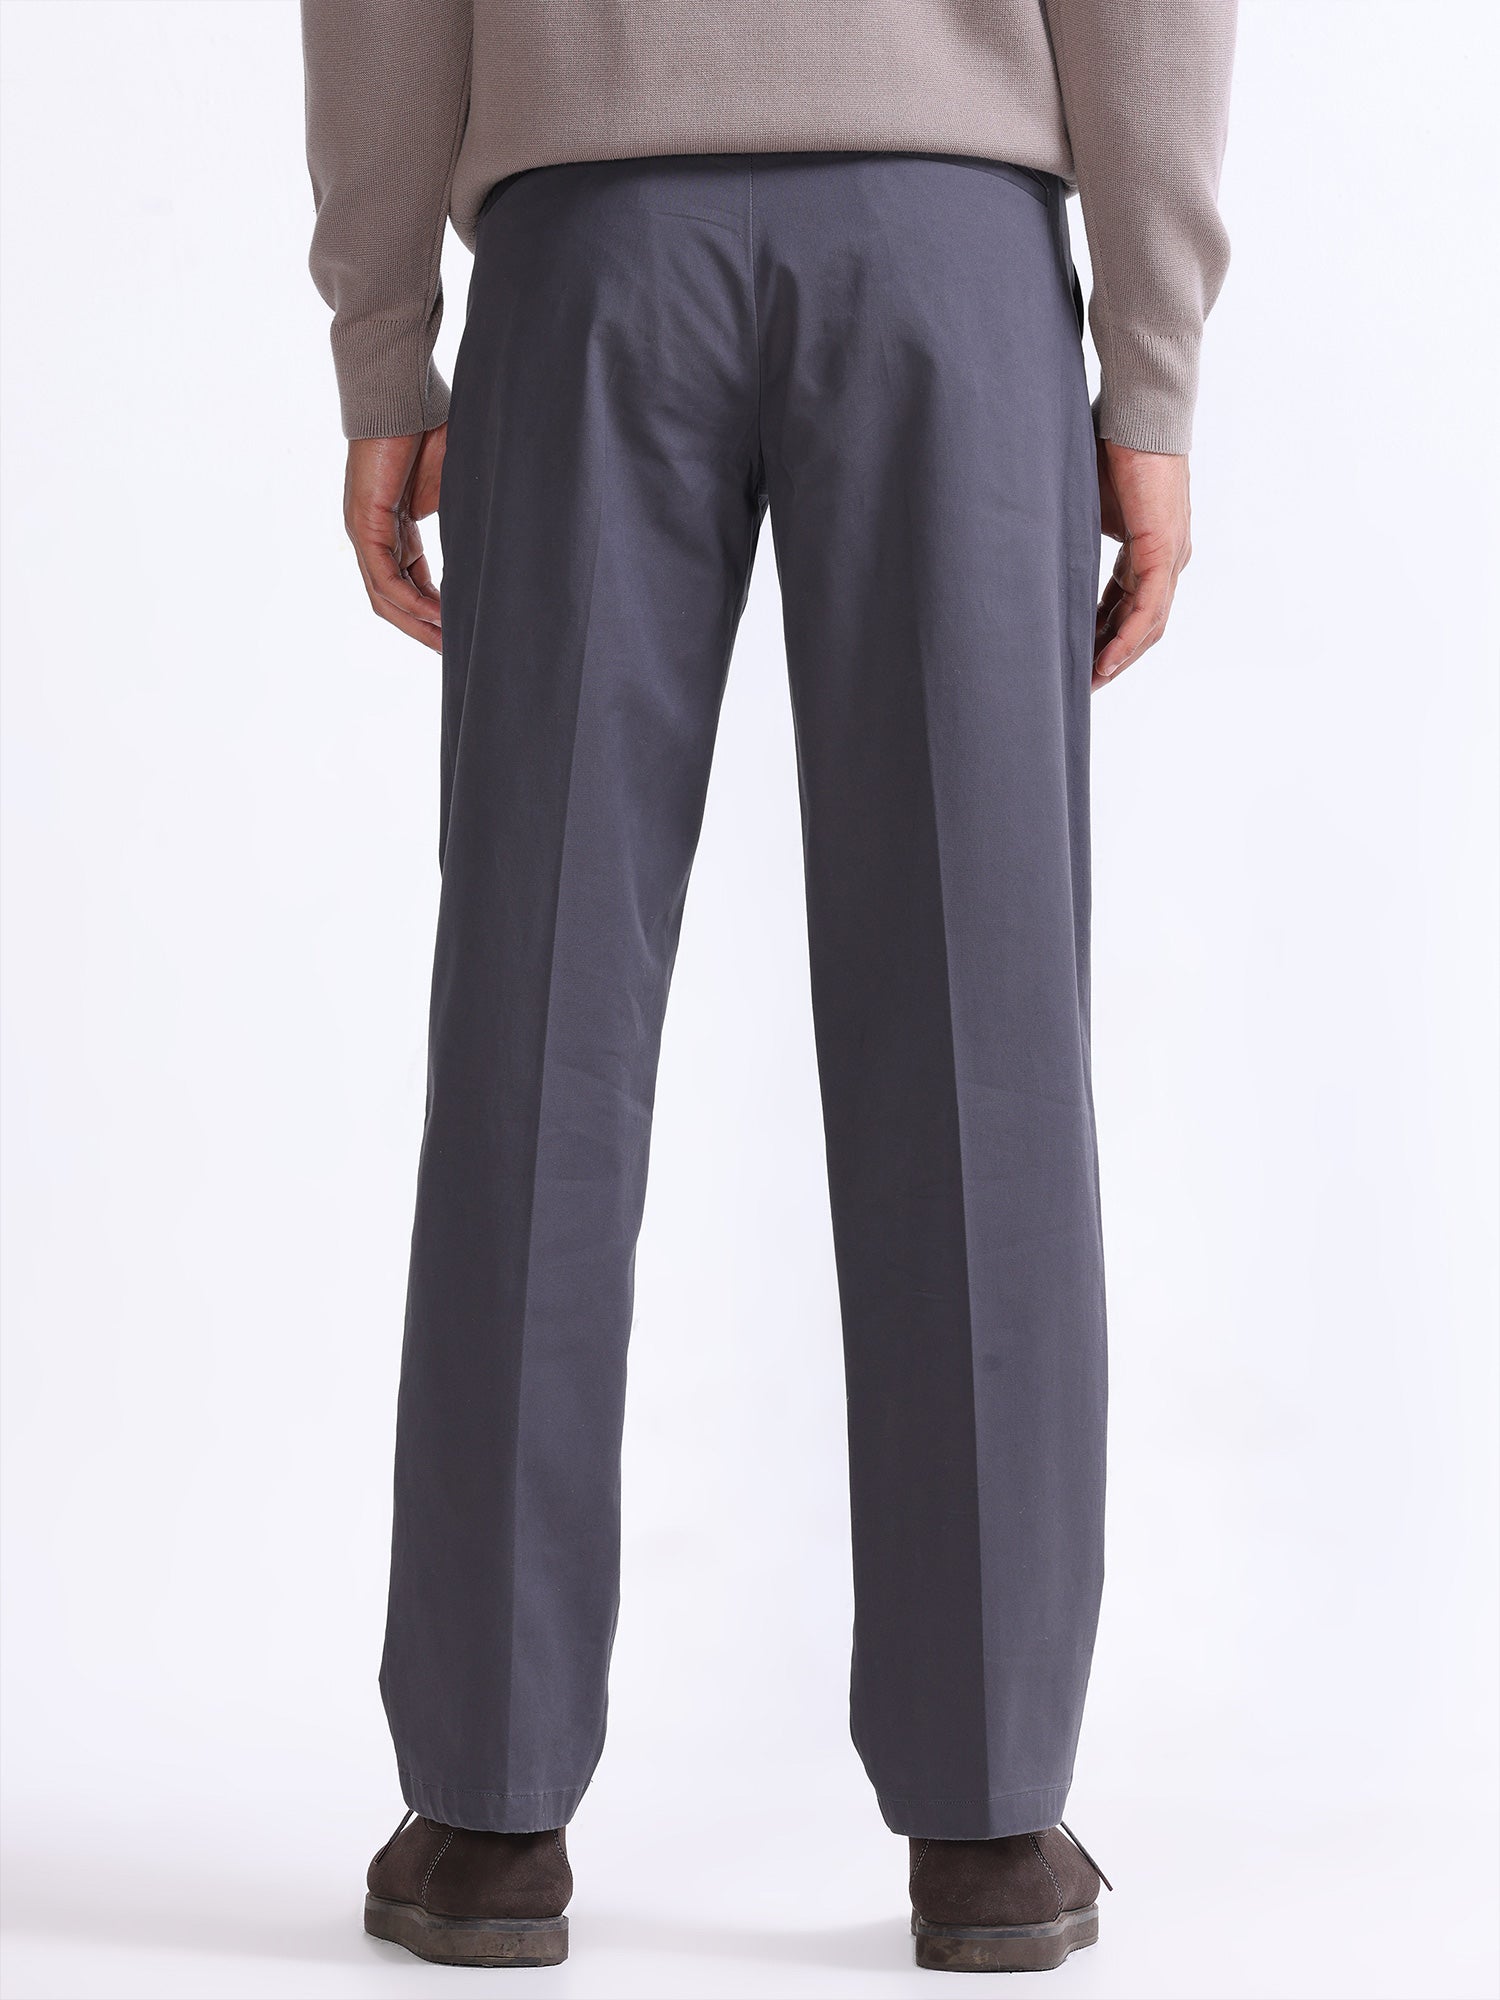 Mortilo mens work pants relaxed fit,Large Colour Lace Size Pants Corduroy  Casual Men's Trousers mens pants Coffee M - Walmart.com